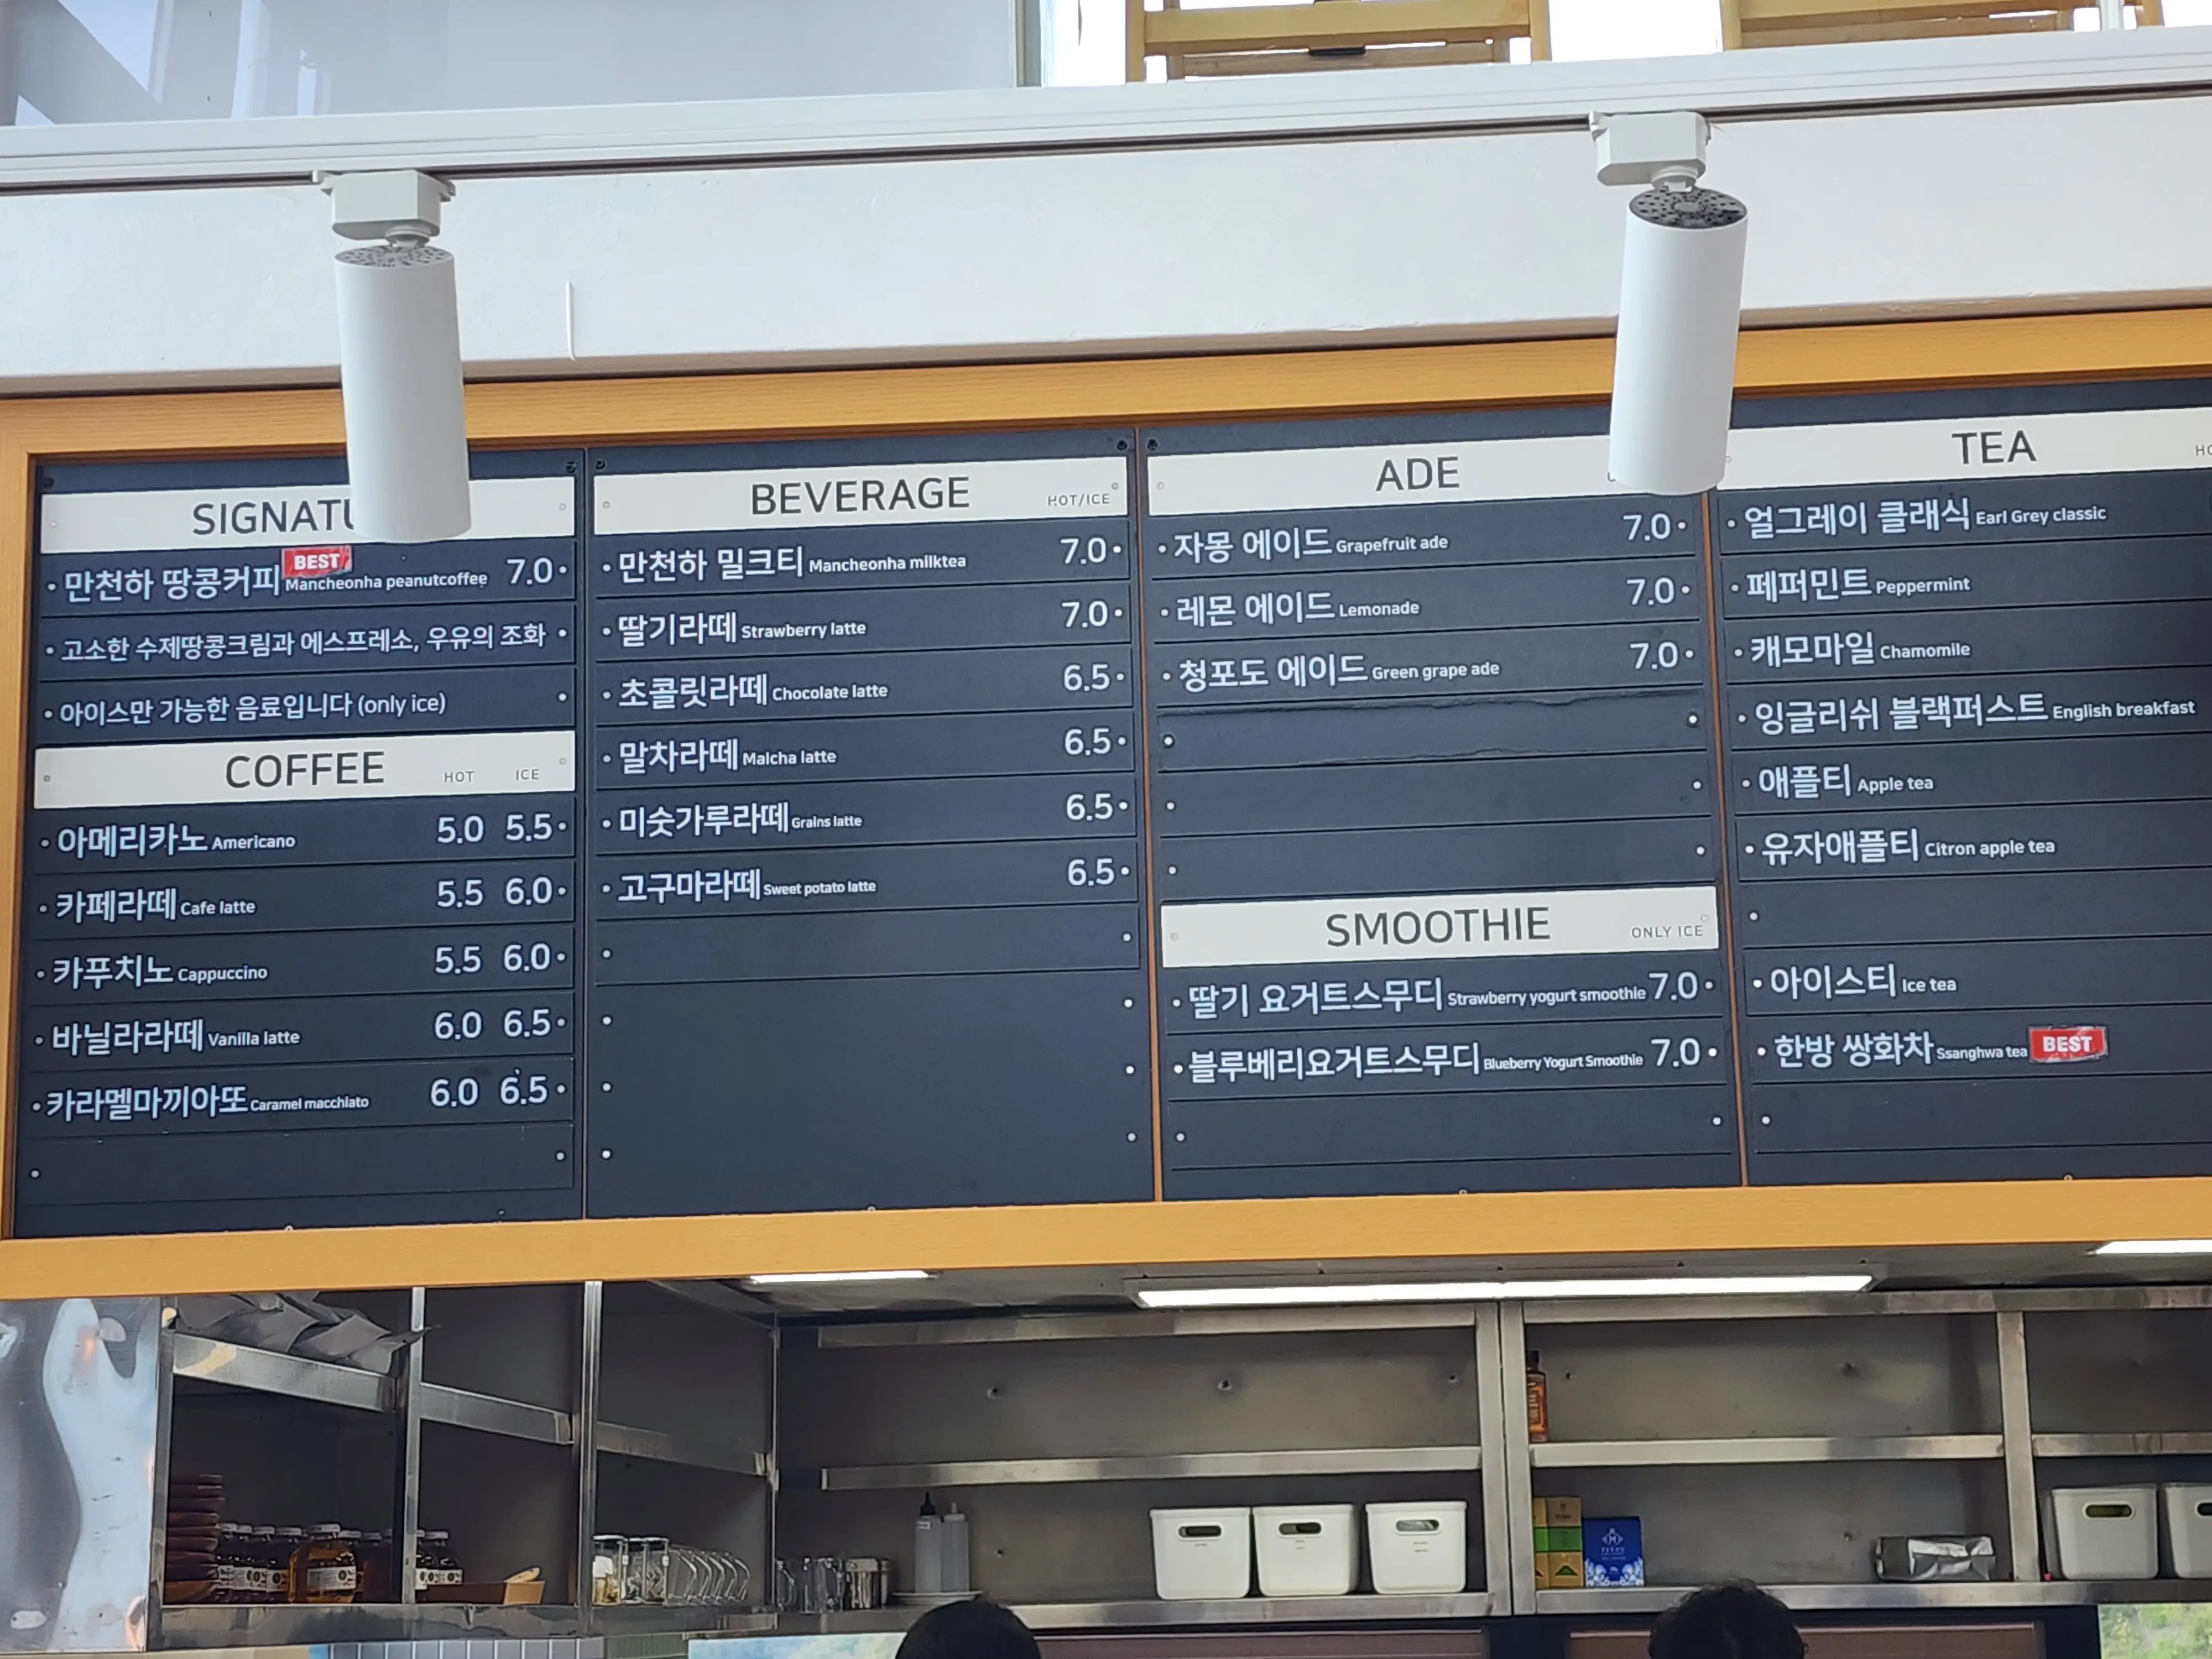 만천하 스카이워크 전망대 근처 카페 메뉴판입니다. 커피와 음료의 가격이 나와있습니다.